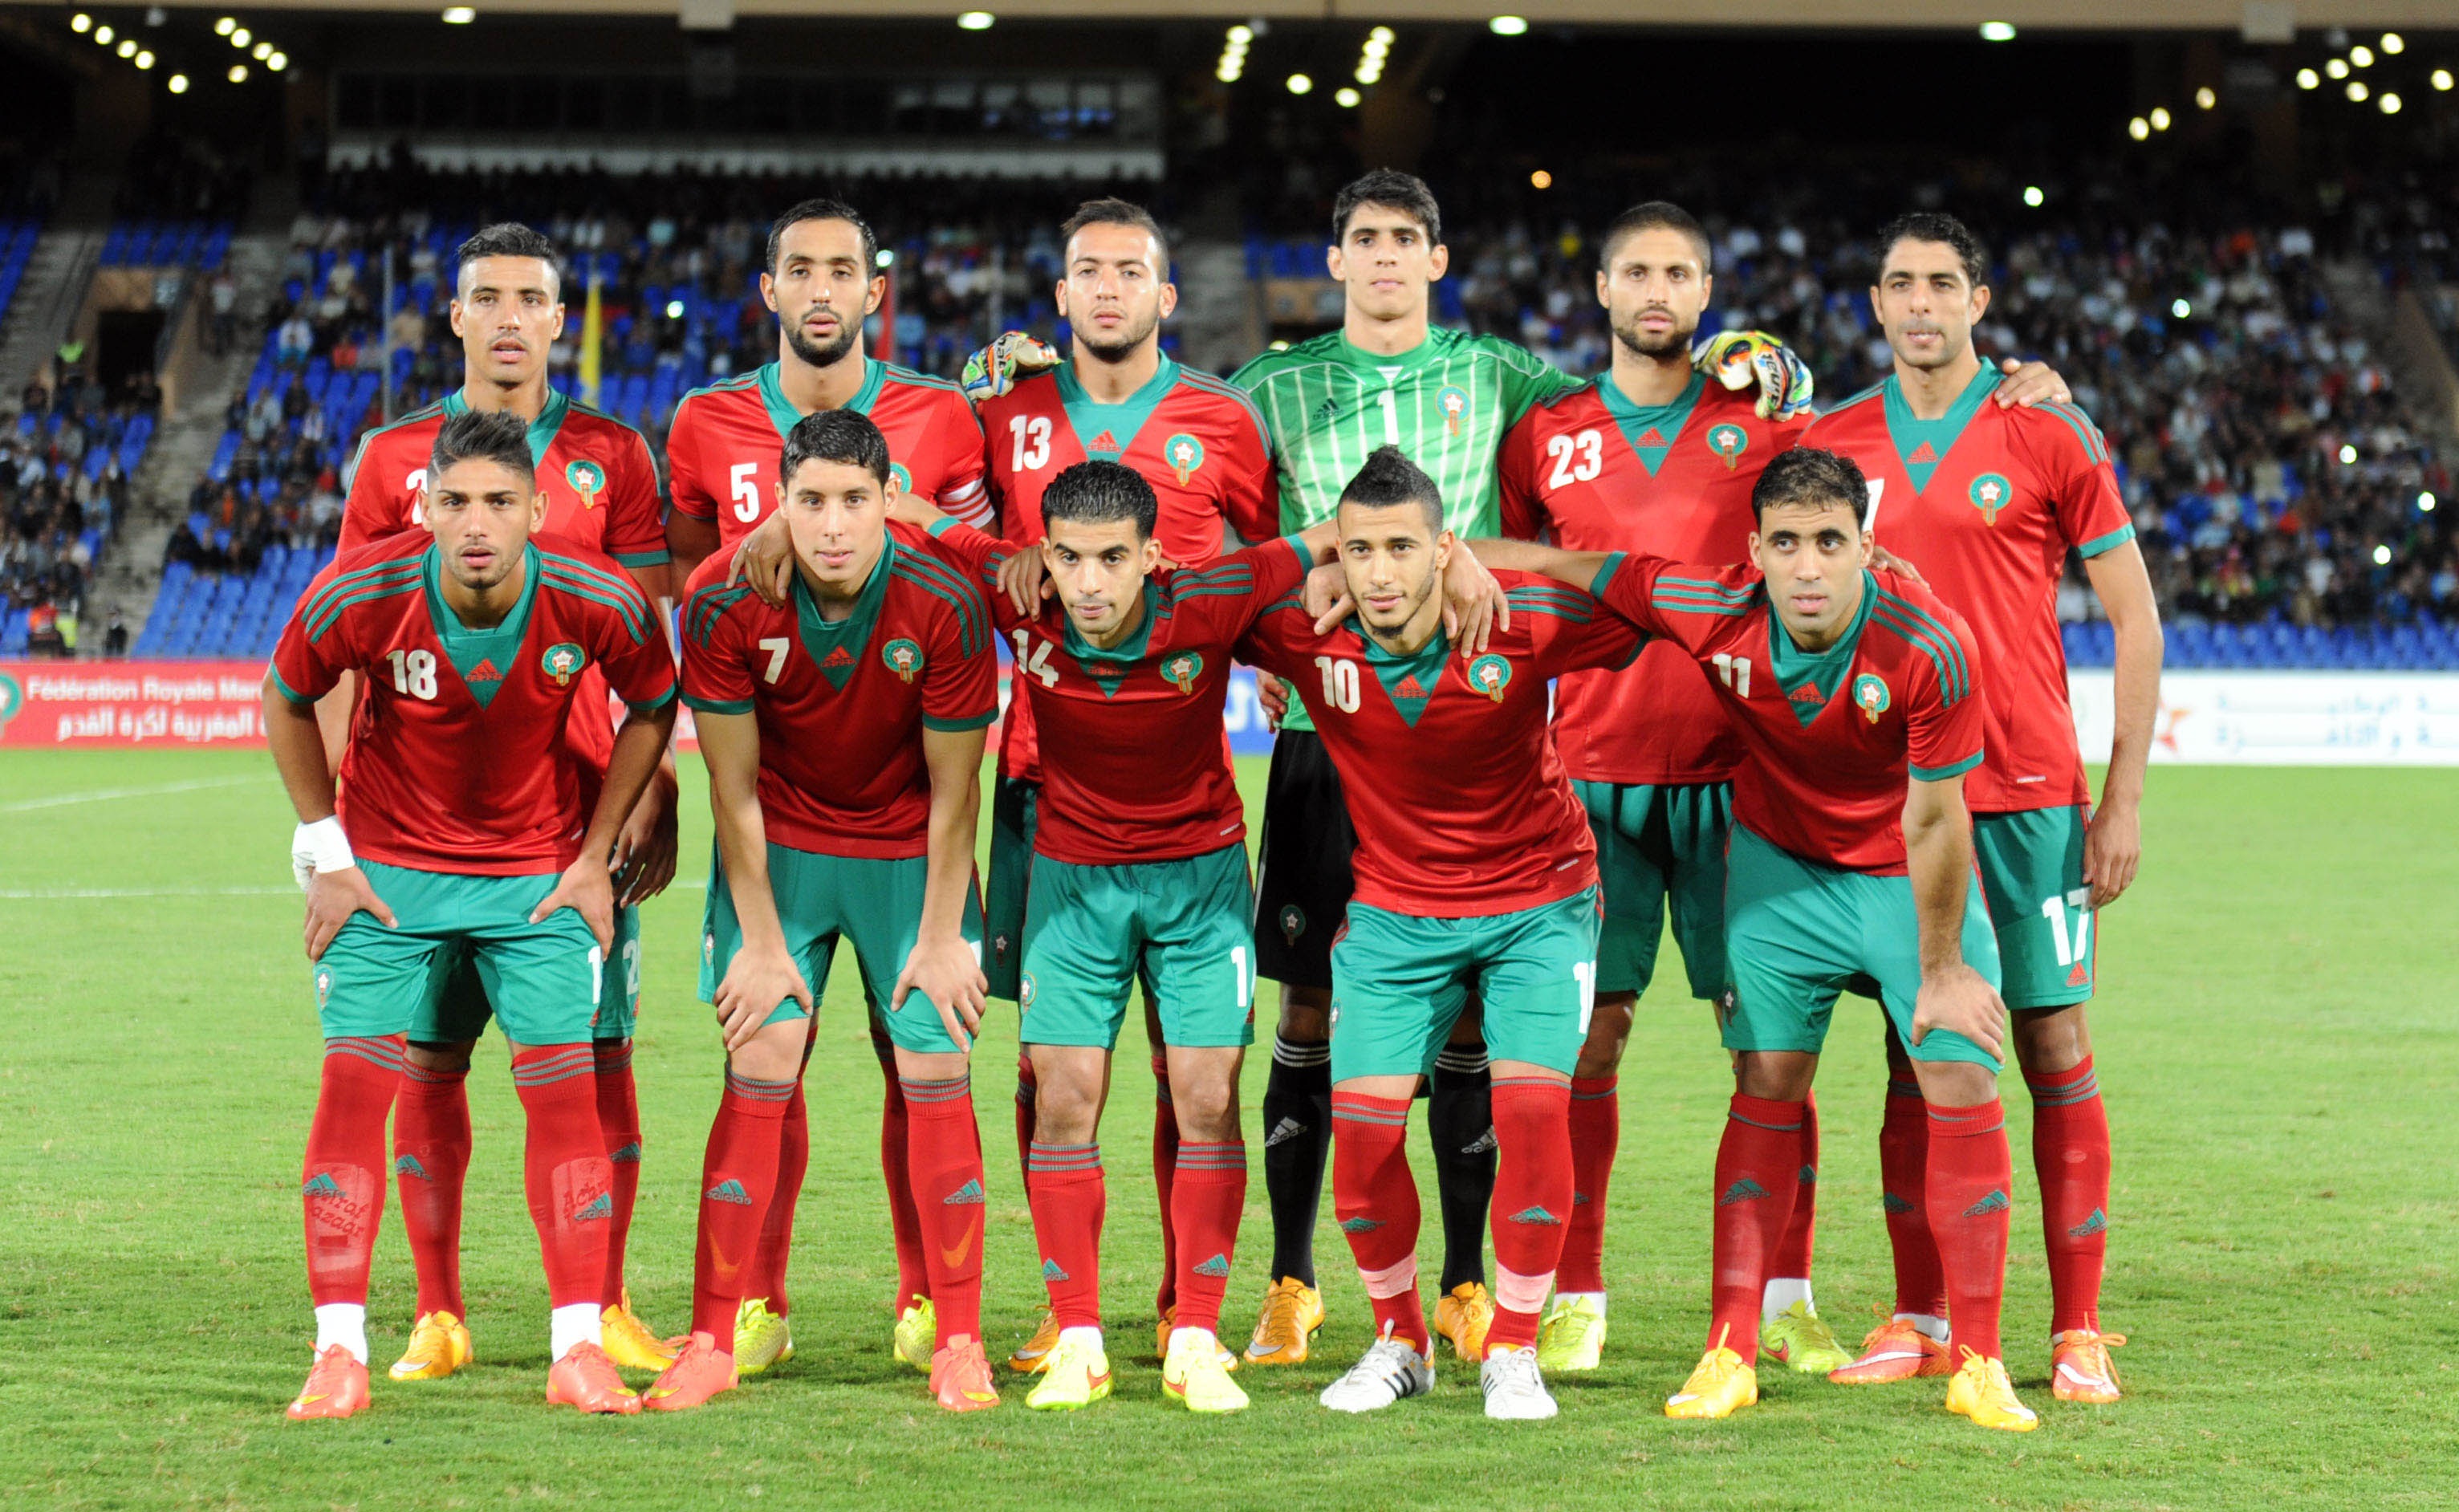 صور منتخب تونس 13 1 صور منتخب المغرب خلفيات المنتخب المغربي